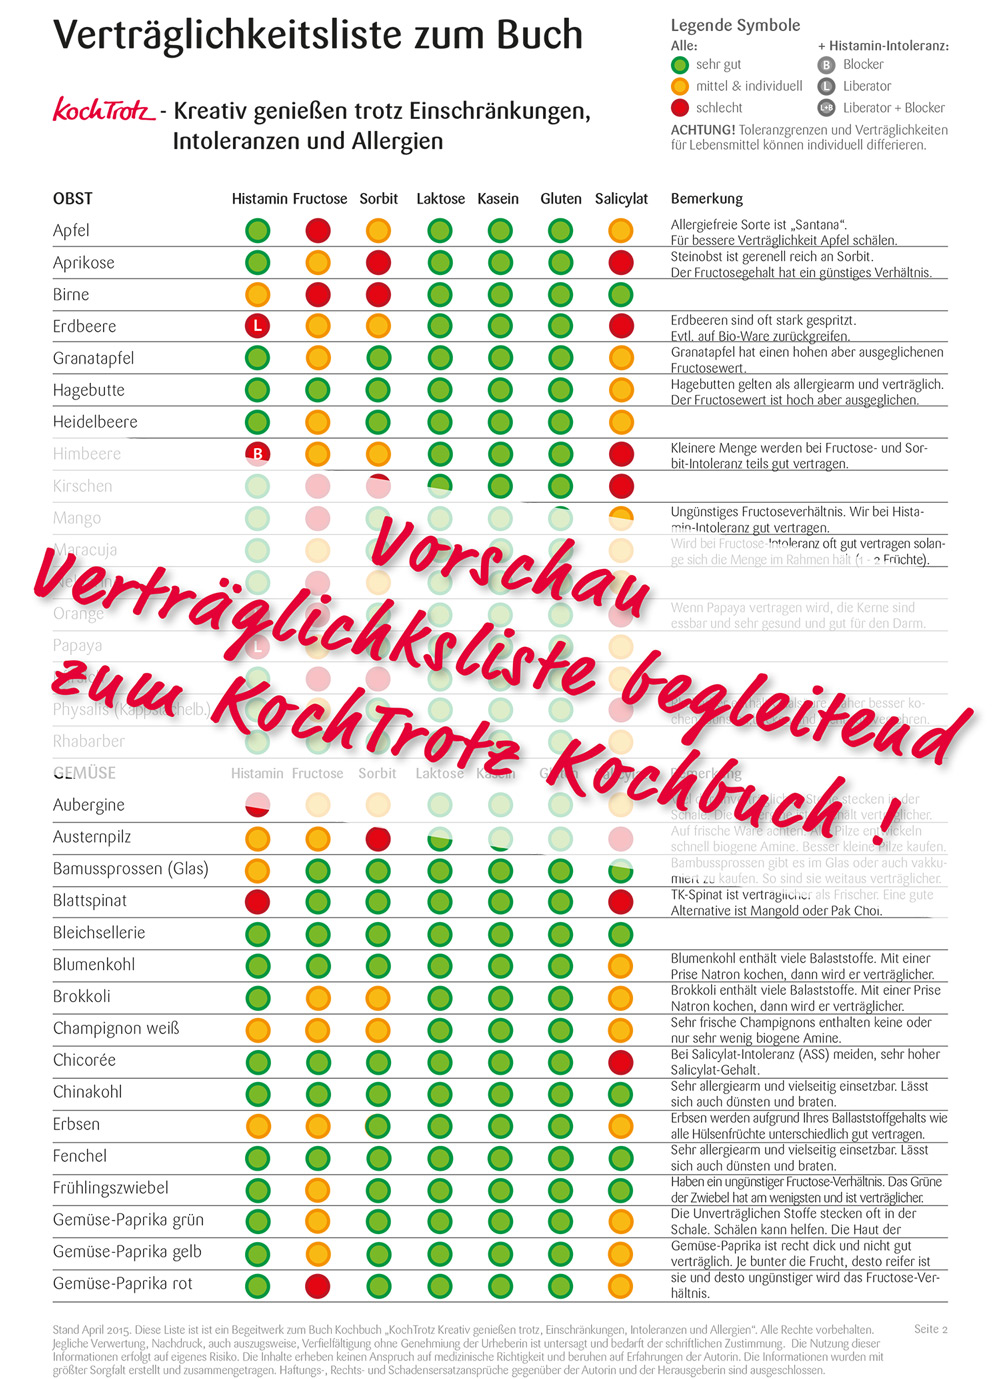 kochtrotz-kreativ-geniessen-kochbuch-vorschau-vertraeglichkeitsliste-1504123-1000-1